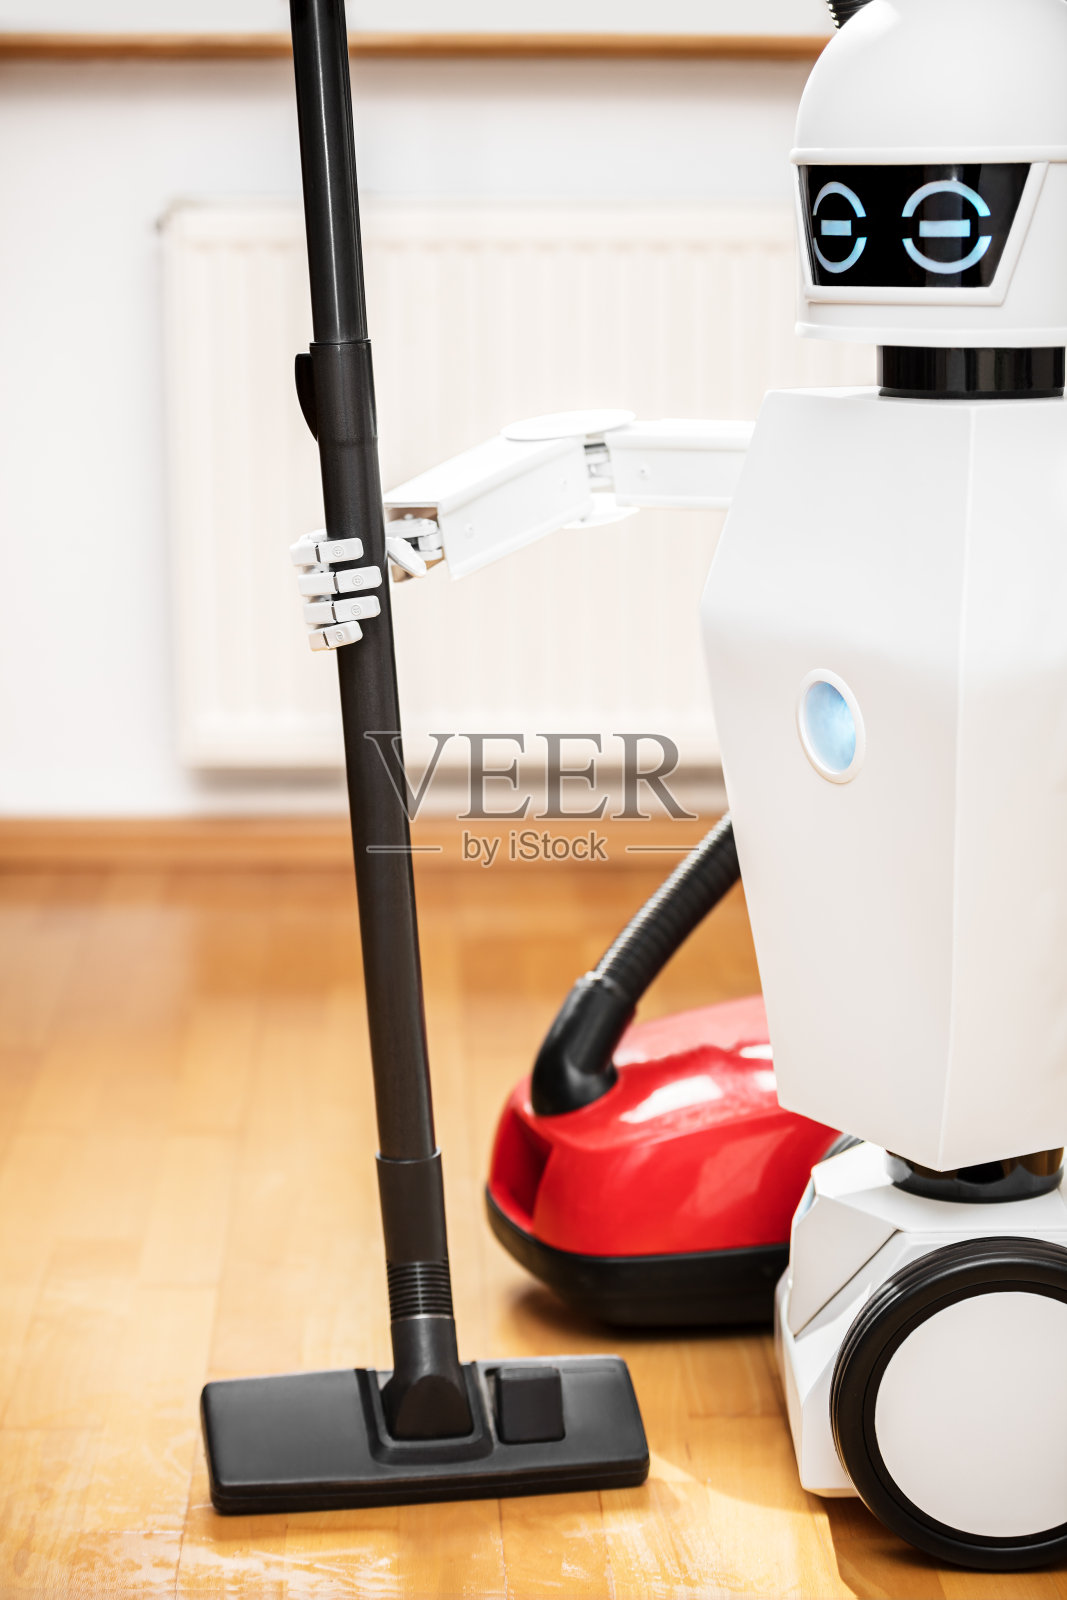 白色机器人或机器人真空吸尘器或robovac正在清洁地板照片摄影图片